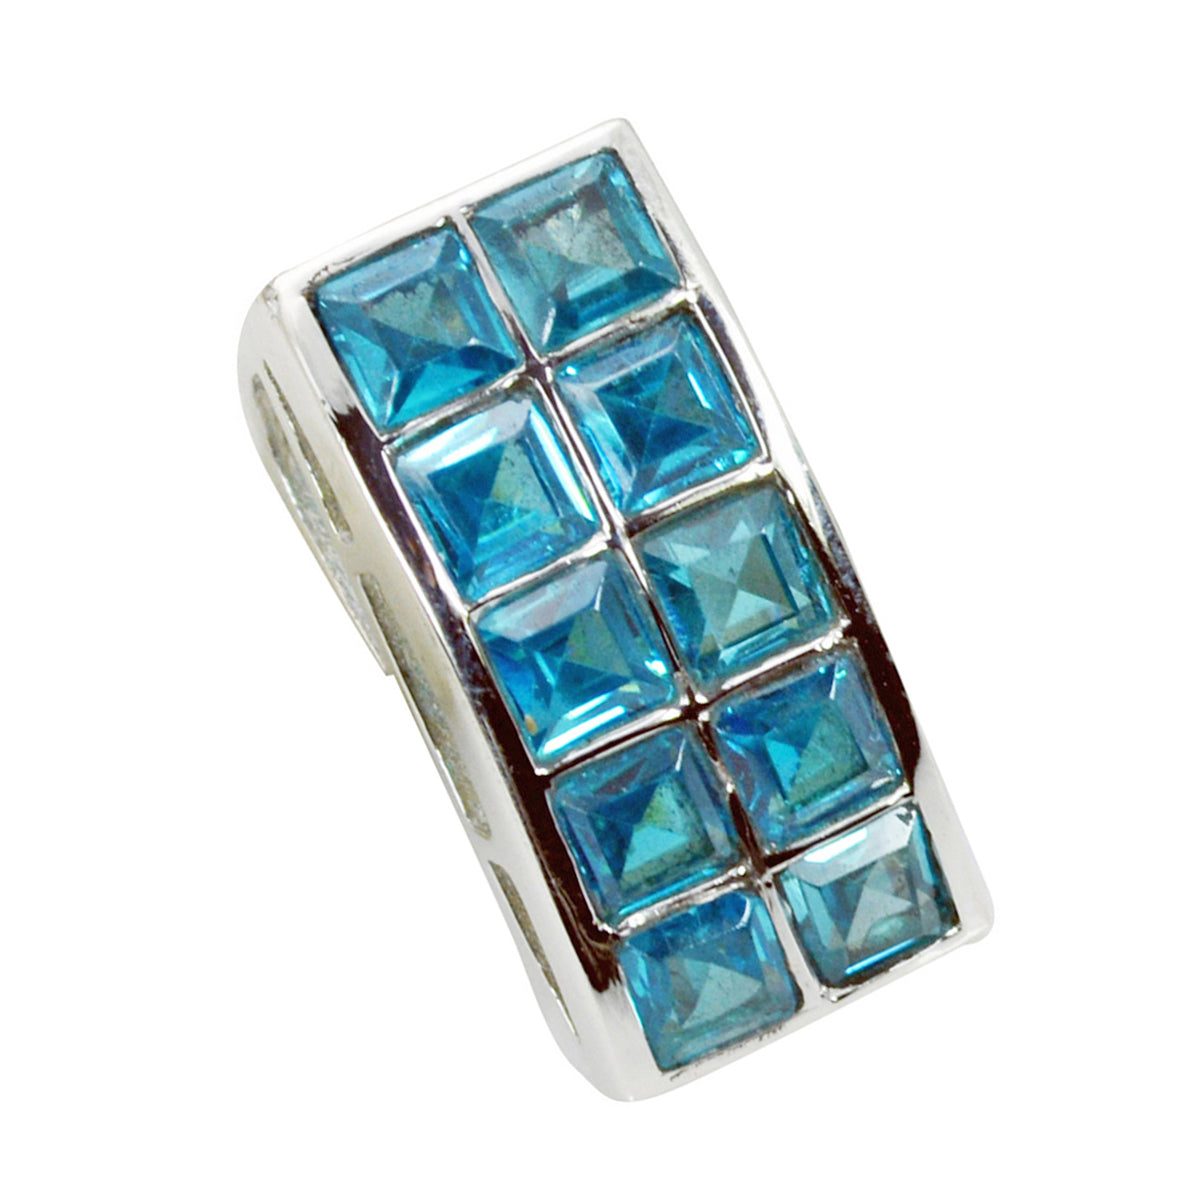 riyo splendide gemme quadrate sfaccettate con topazio azzurro azzurro, ciondolo in argento massiccio, regalo per il matrimonio